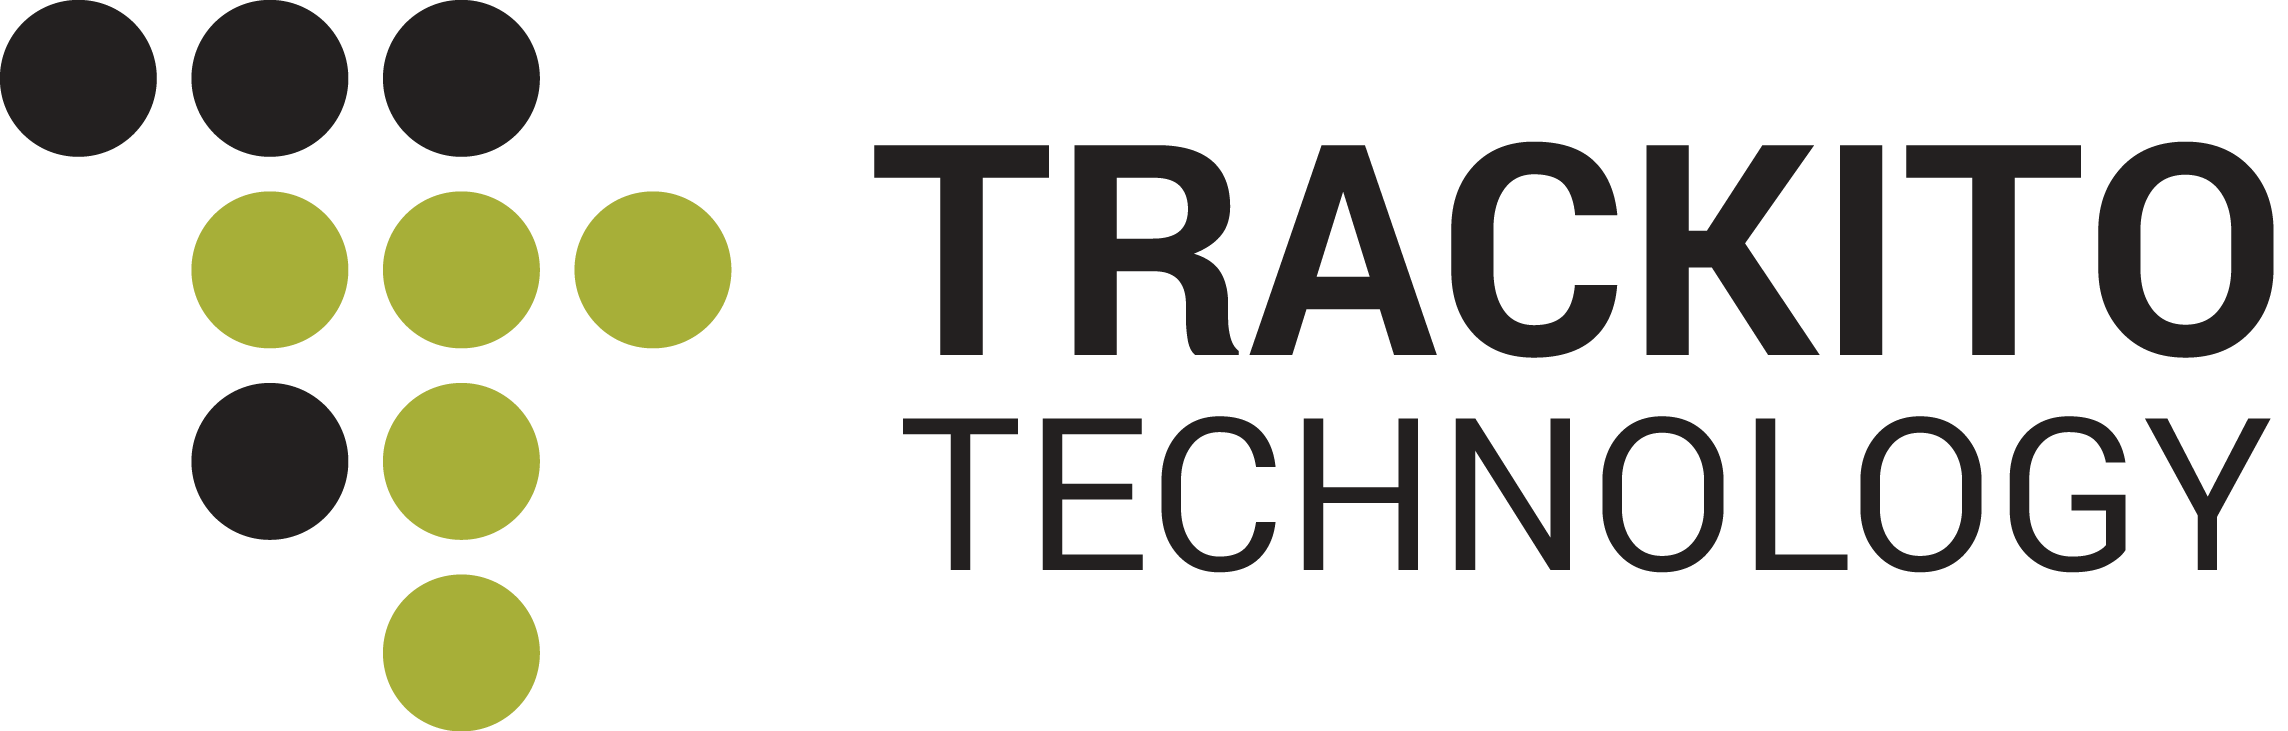  :: Trackito Technology E-shop